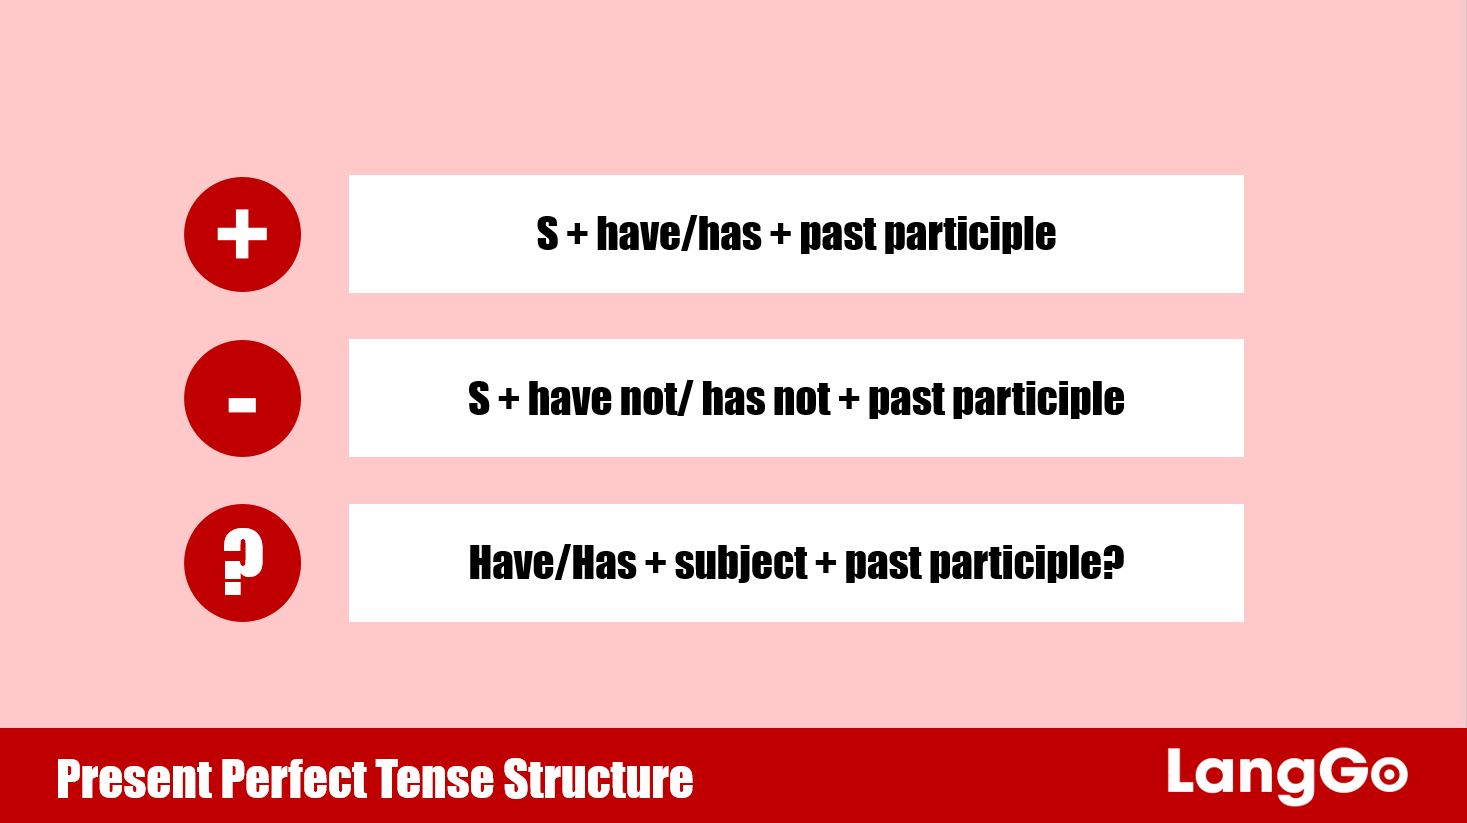 Prensent Perfect Tense - Thì hiện tại hoàn thành: Cấu trúc, cách dùng và bài tập